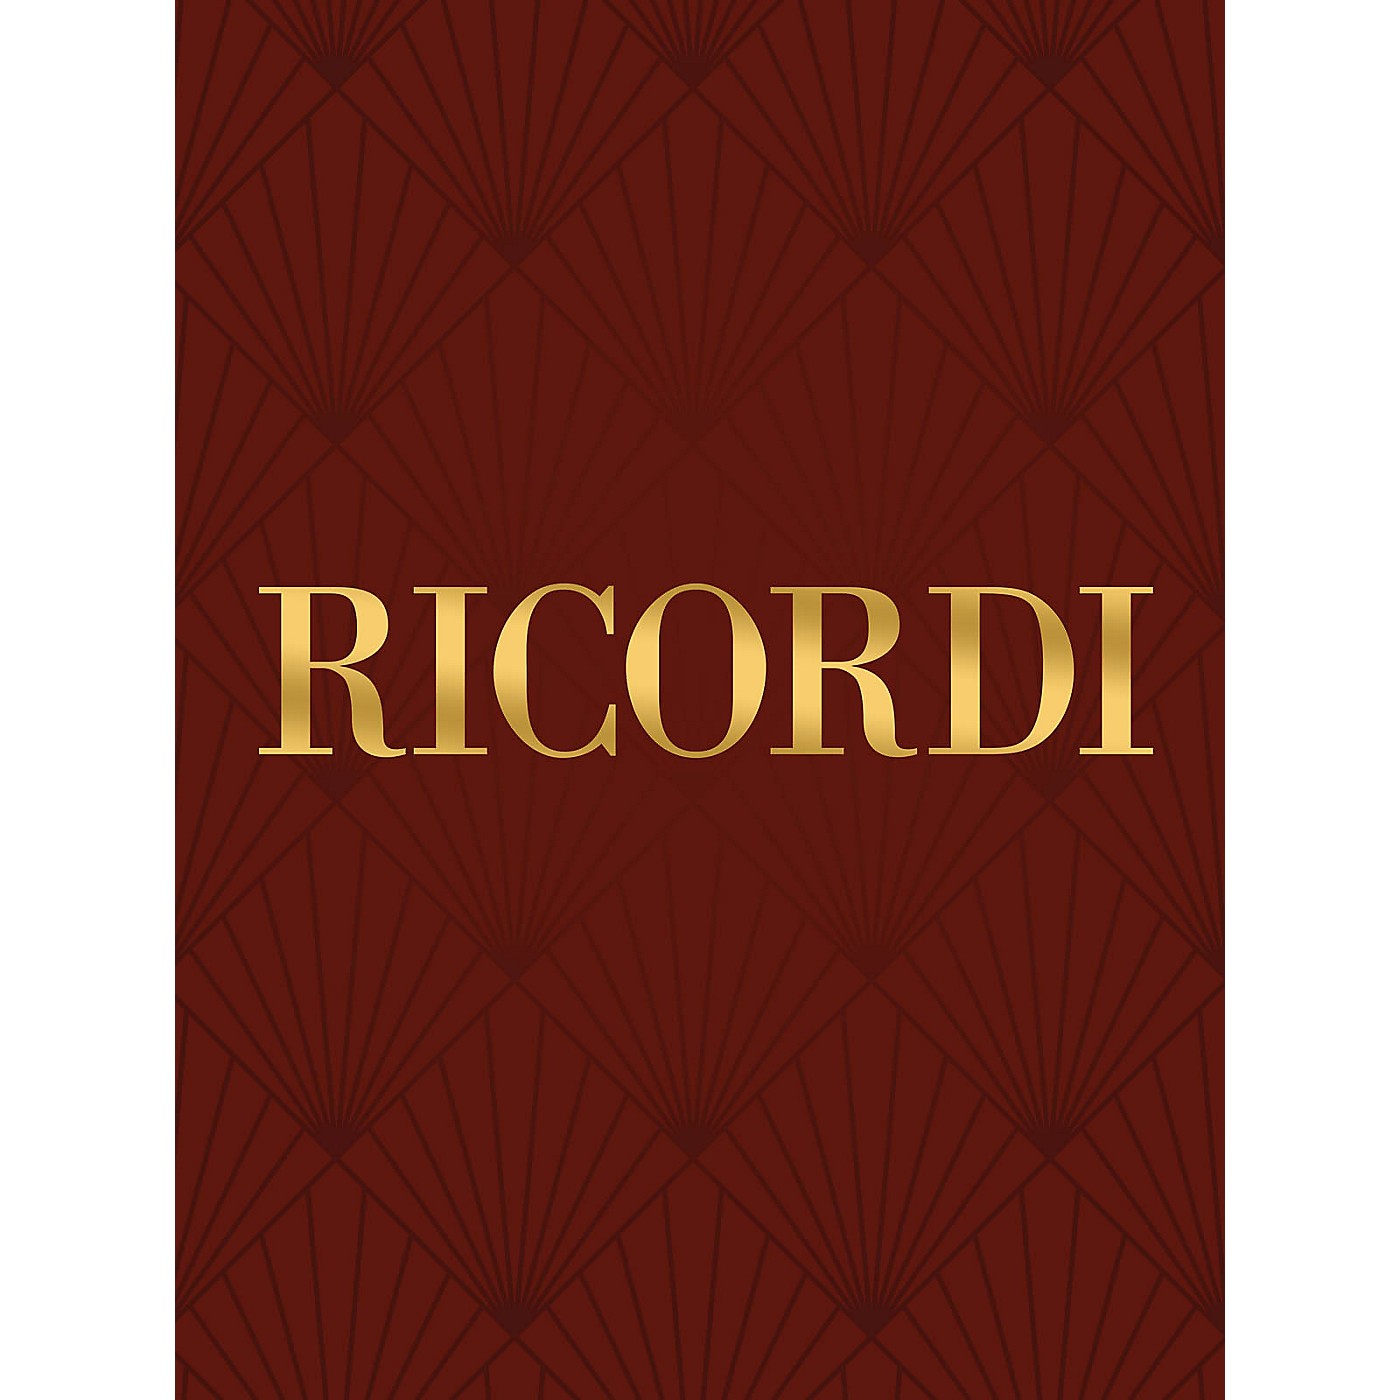 Ricordi Concerto in D Major for Violoncello Strings and Basso Continuo RV403 by Vivaldi Edited by Enzo Altobelli thumbnail